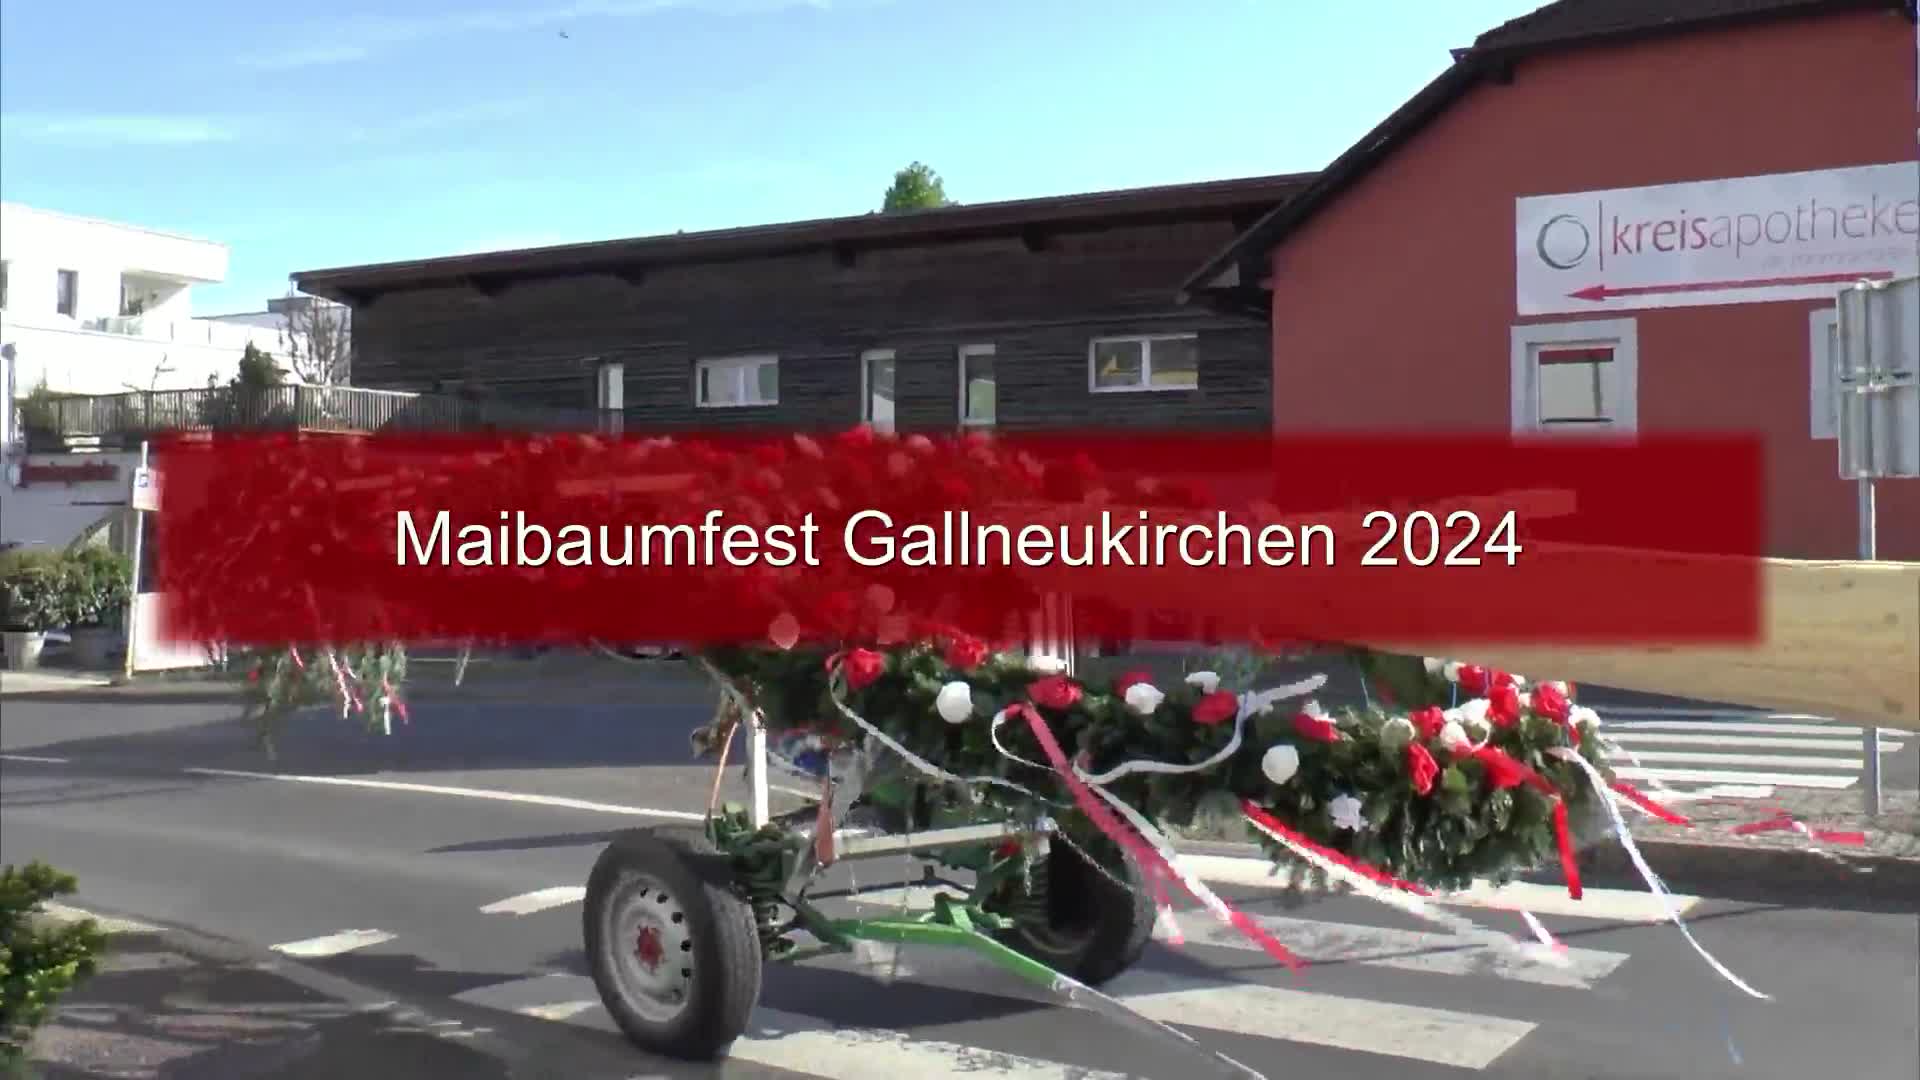 Maibaumfest Gallneukirchen 2024